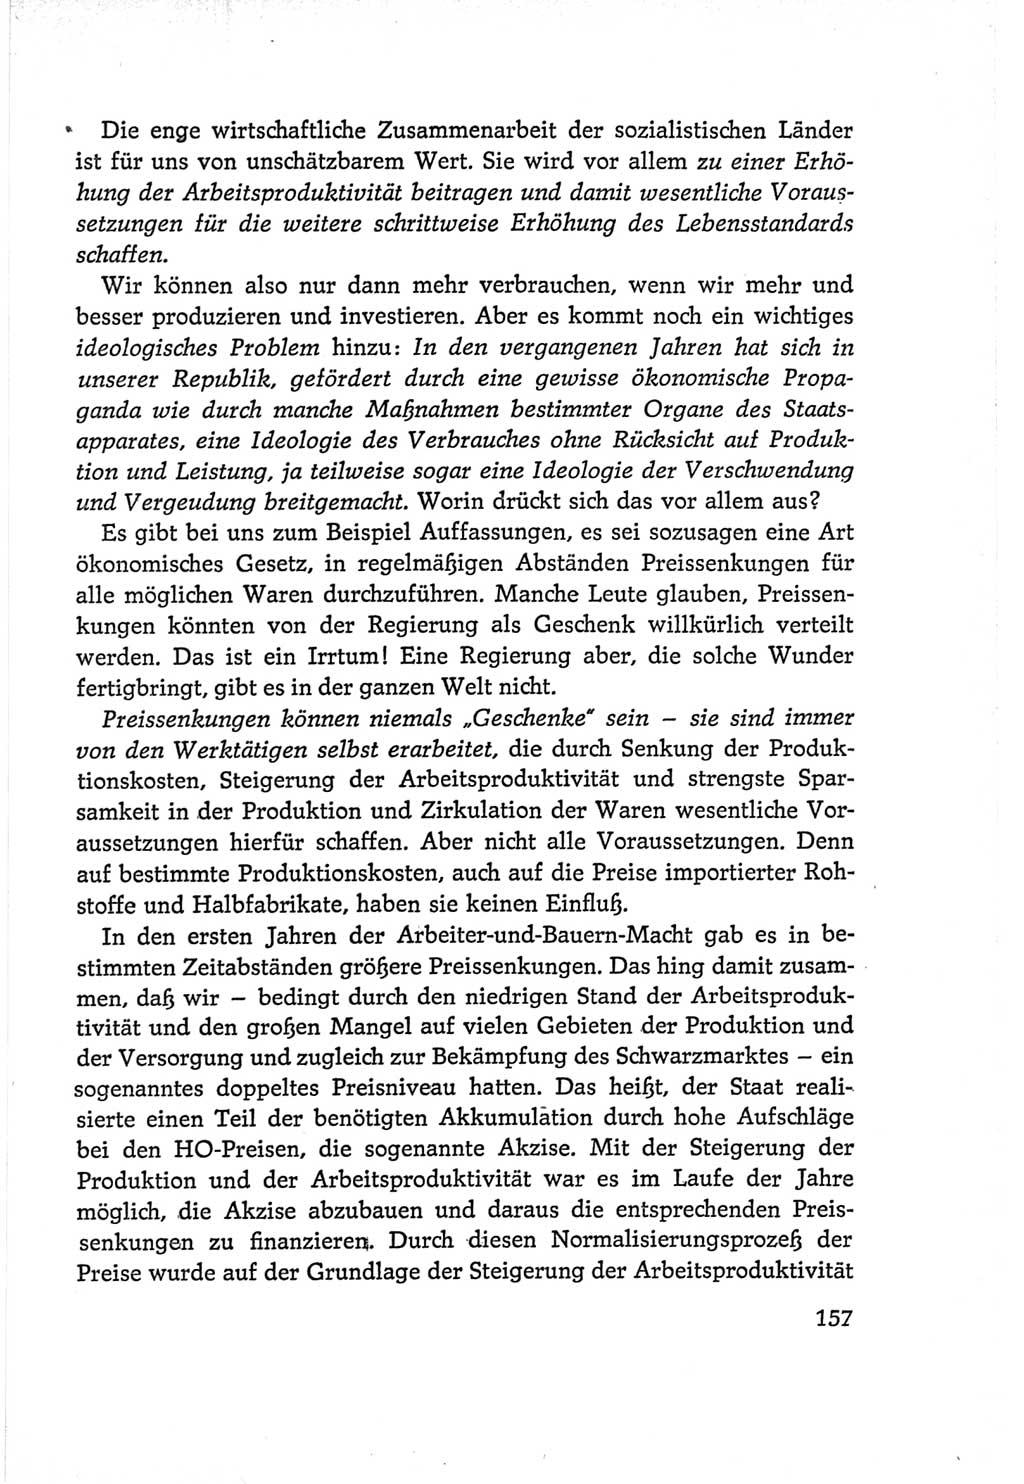 Protokoll der Verhandlungen des Ⅵ. Parteitages der Sozialistischen Einheitspartei Deutschlands (SED) [Deutsche Demokratische Republik (DDR)] 1963, Band Ⅰ, Seite 157 (Prot. Verh. Ⅵ. PT SED DDR 1963, Bd. Ⅰ, S. 157)